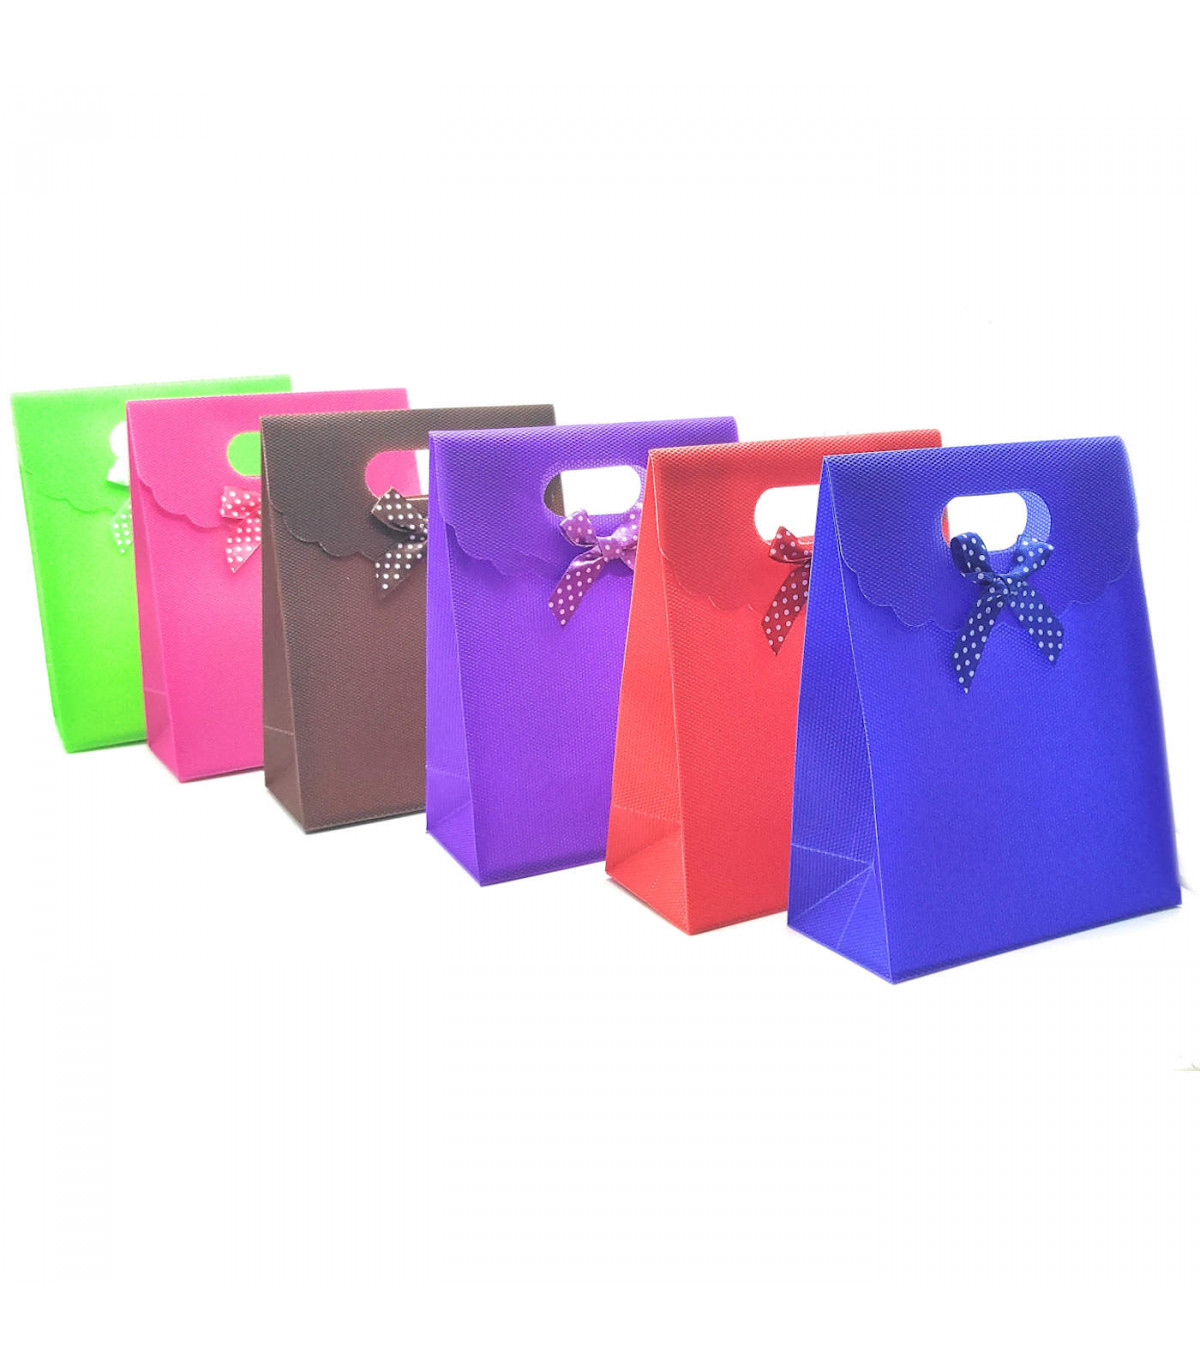 Pack de 12 bolsas para regalo de diferentes y alegres colores, de